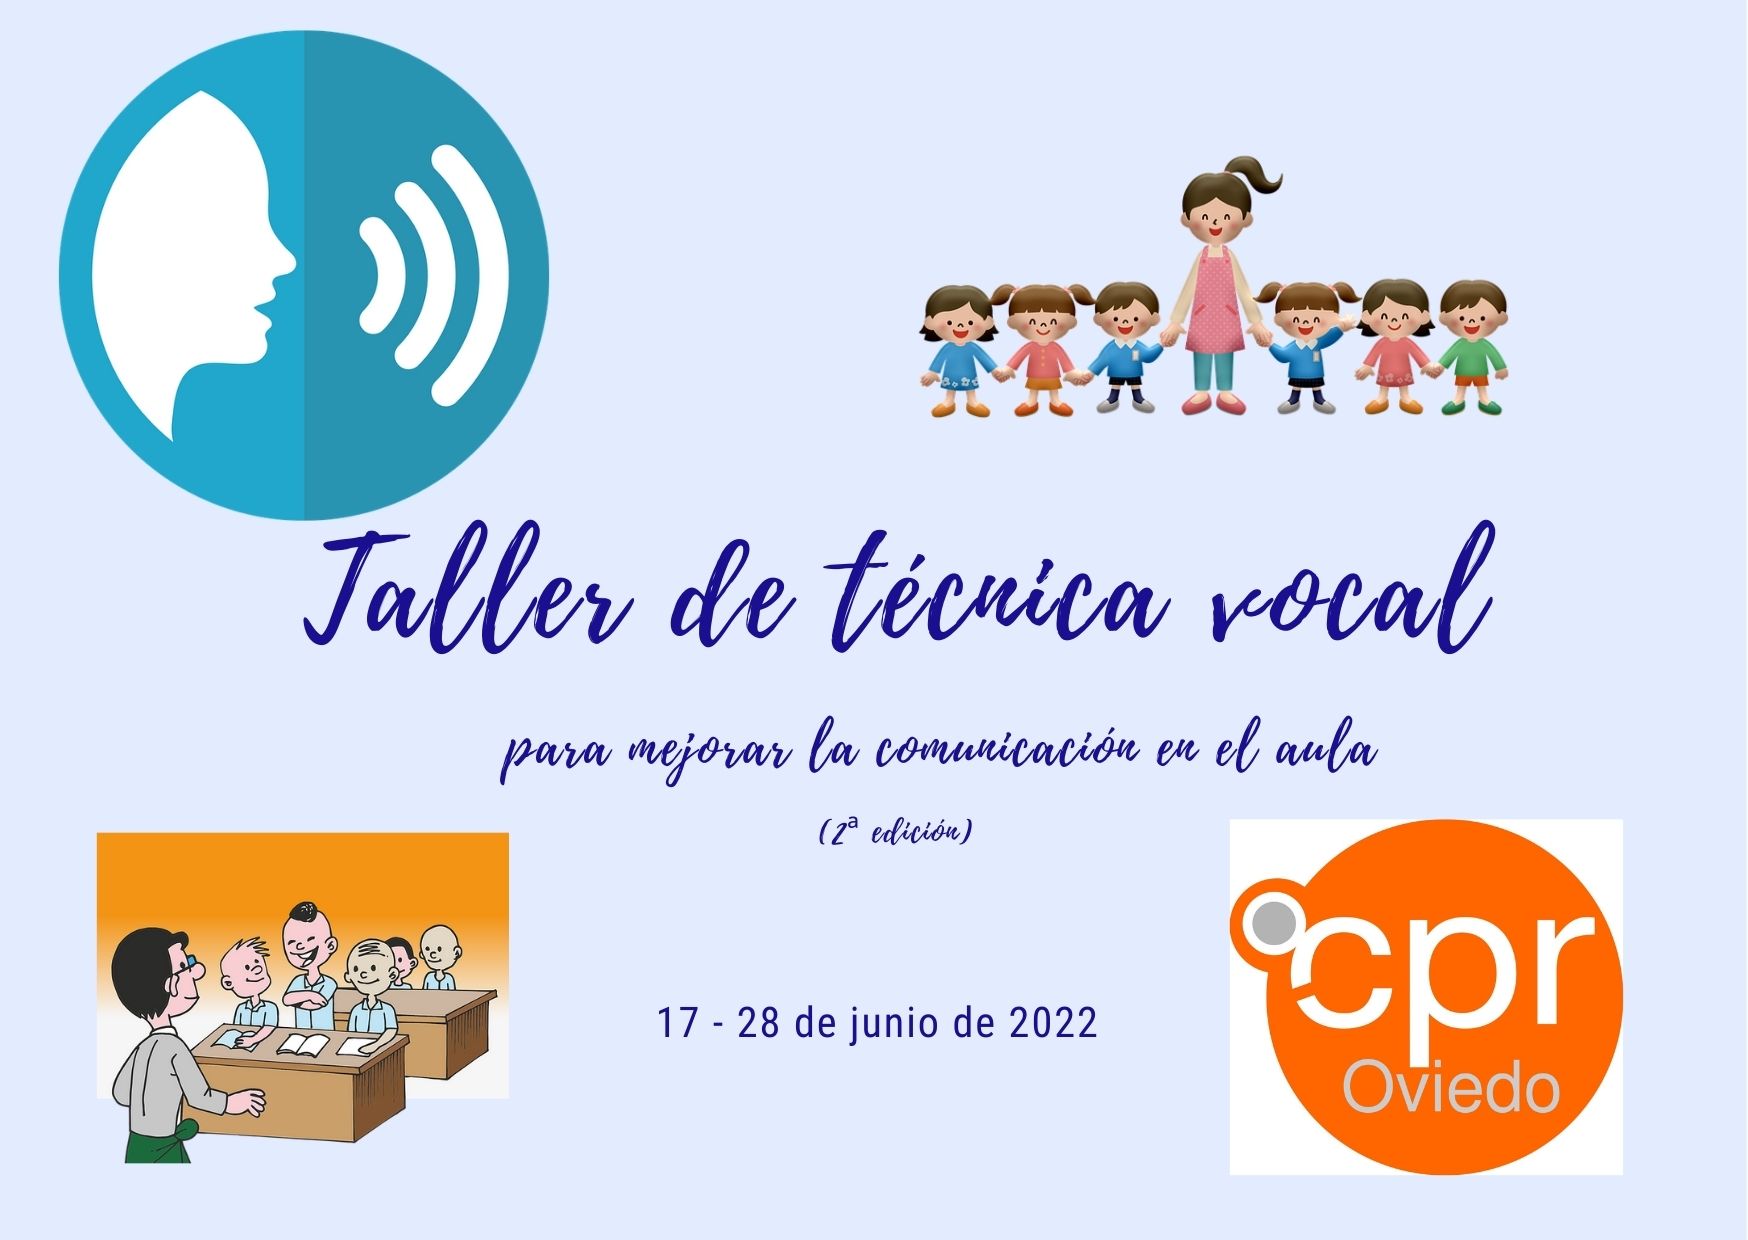 Abierta la inscripción a la segunda edición del curso presencial “Taller de técnica vocal para mejorar la comunicación en el aula”